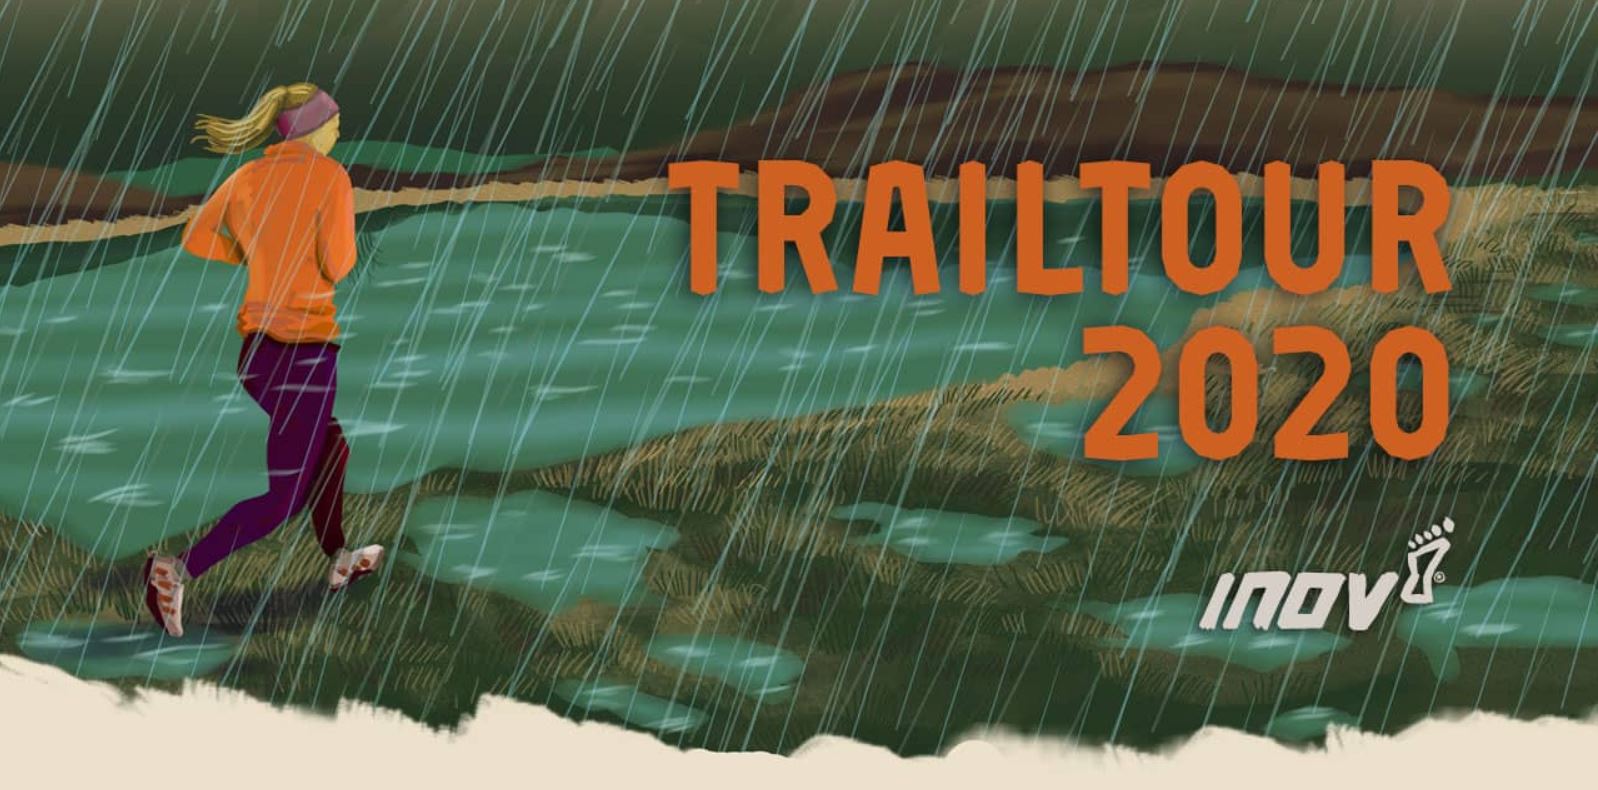 Inov-8 Trailtour 2020 jako náhrada orienťácké sezóny